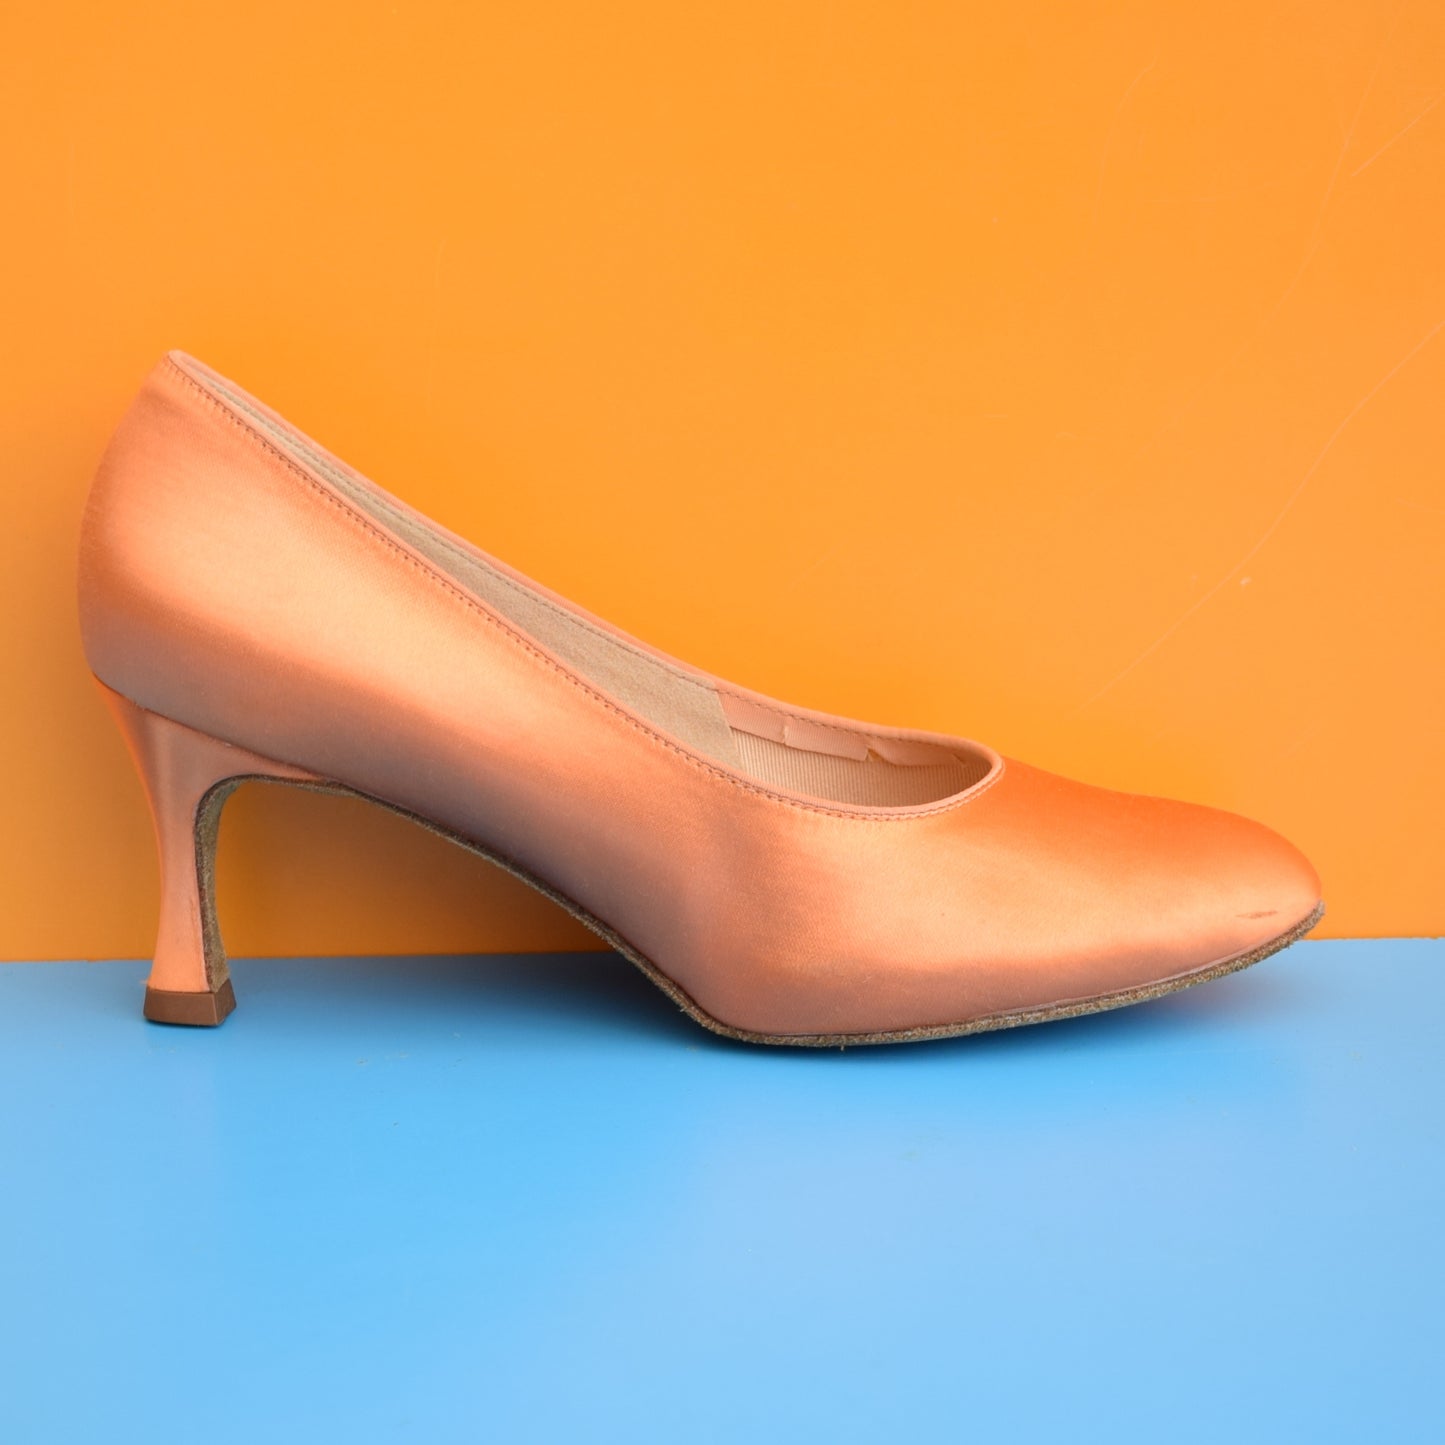 Vintage 1970s Satin Dance Shoes - Size 8 -Orange